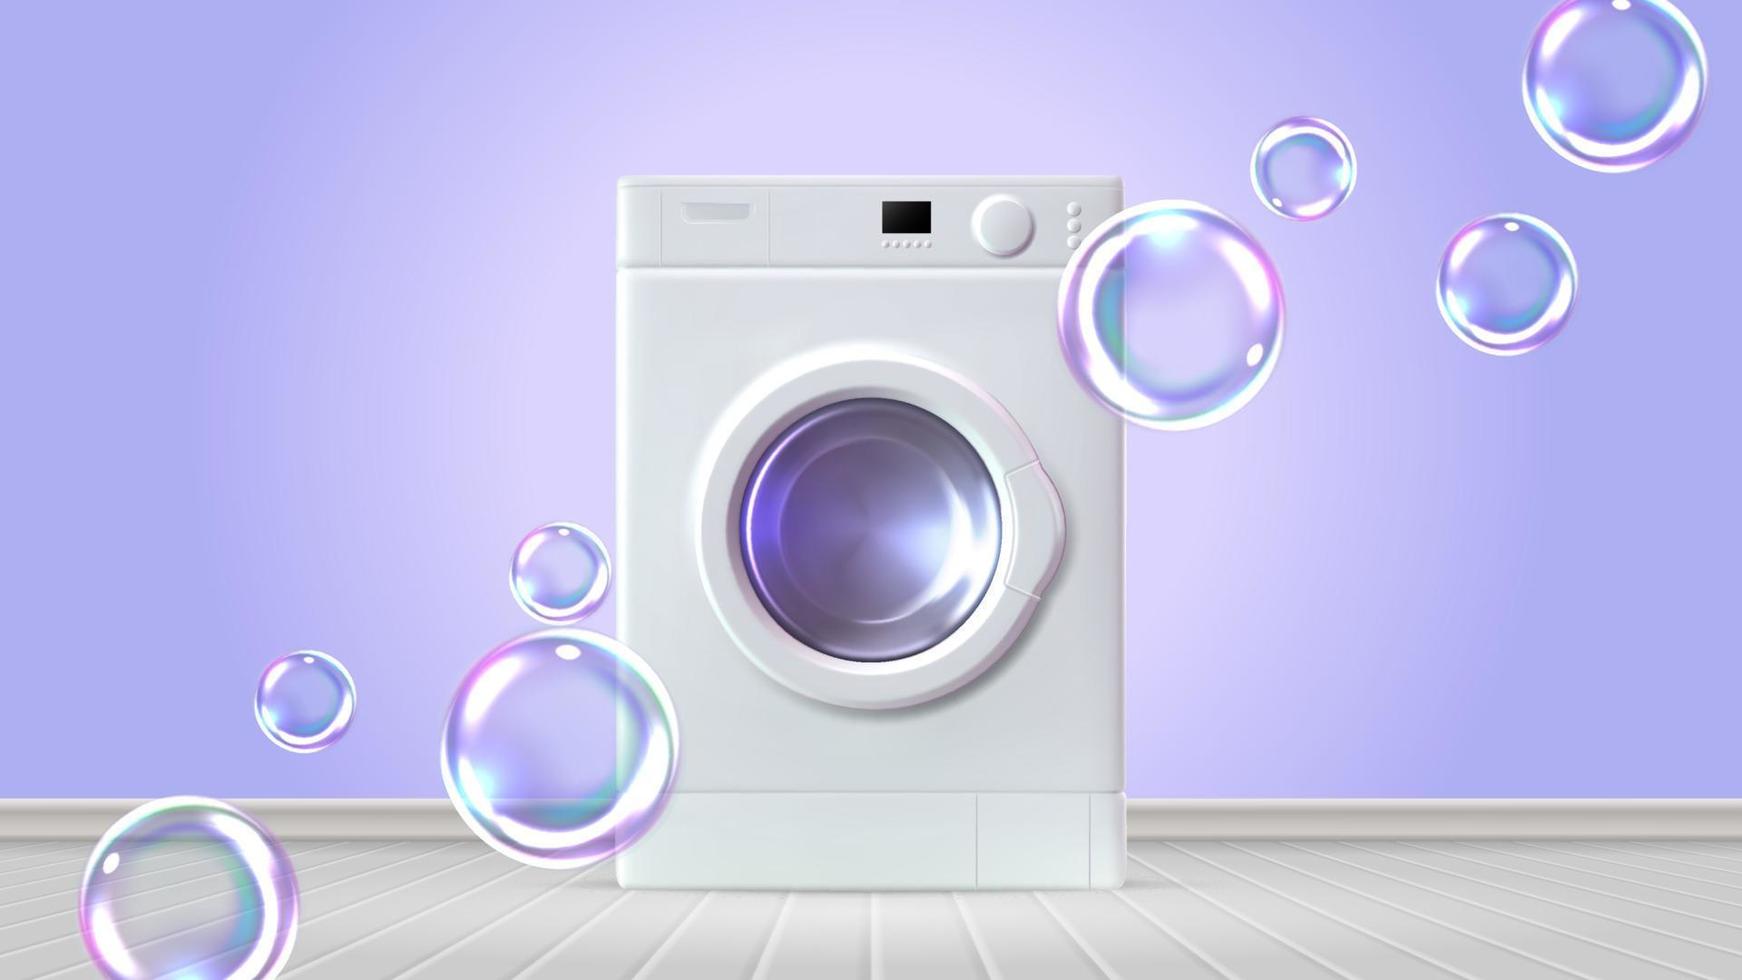 interieur met het wassen machine en zeep bubbels. realistisch vector illustratie